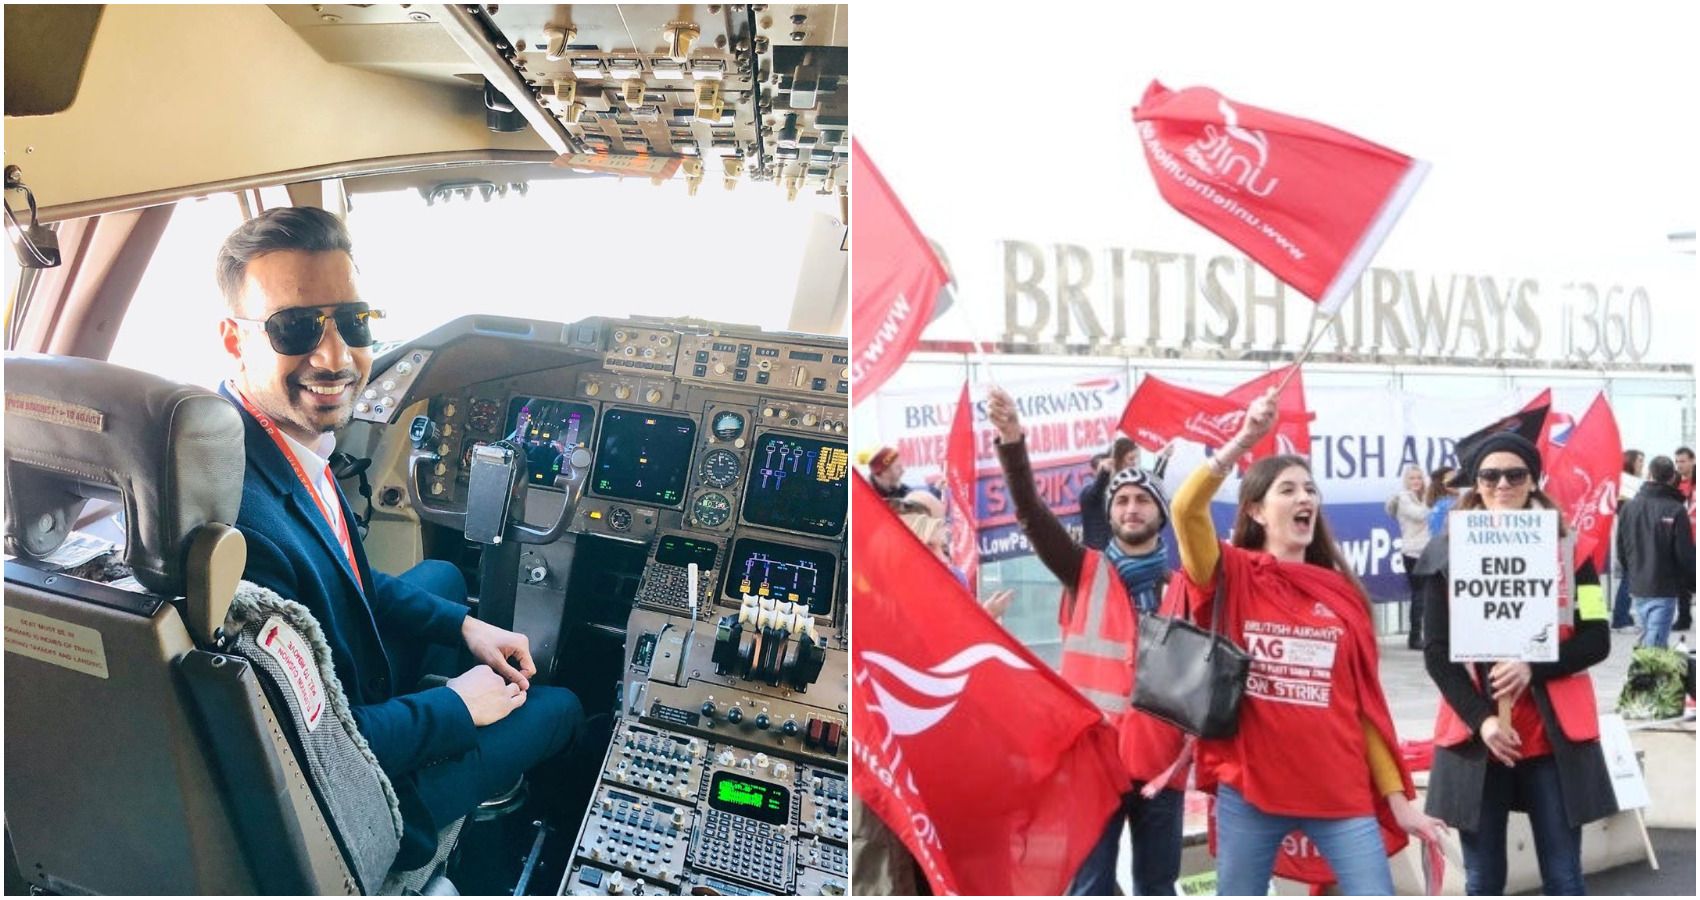 british airways protests pilot